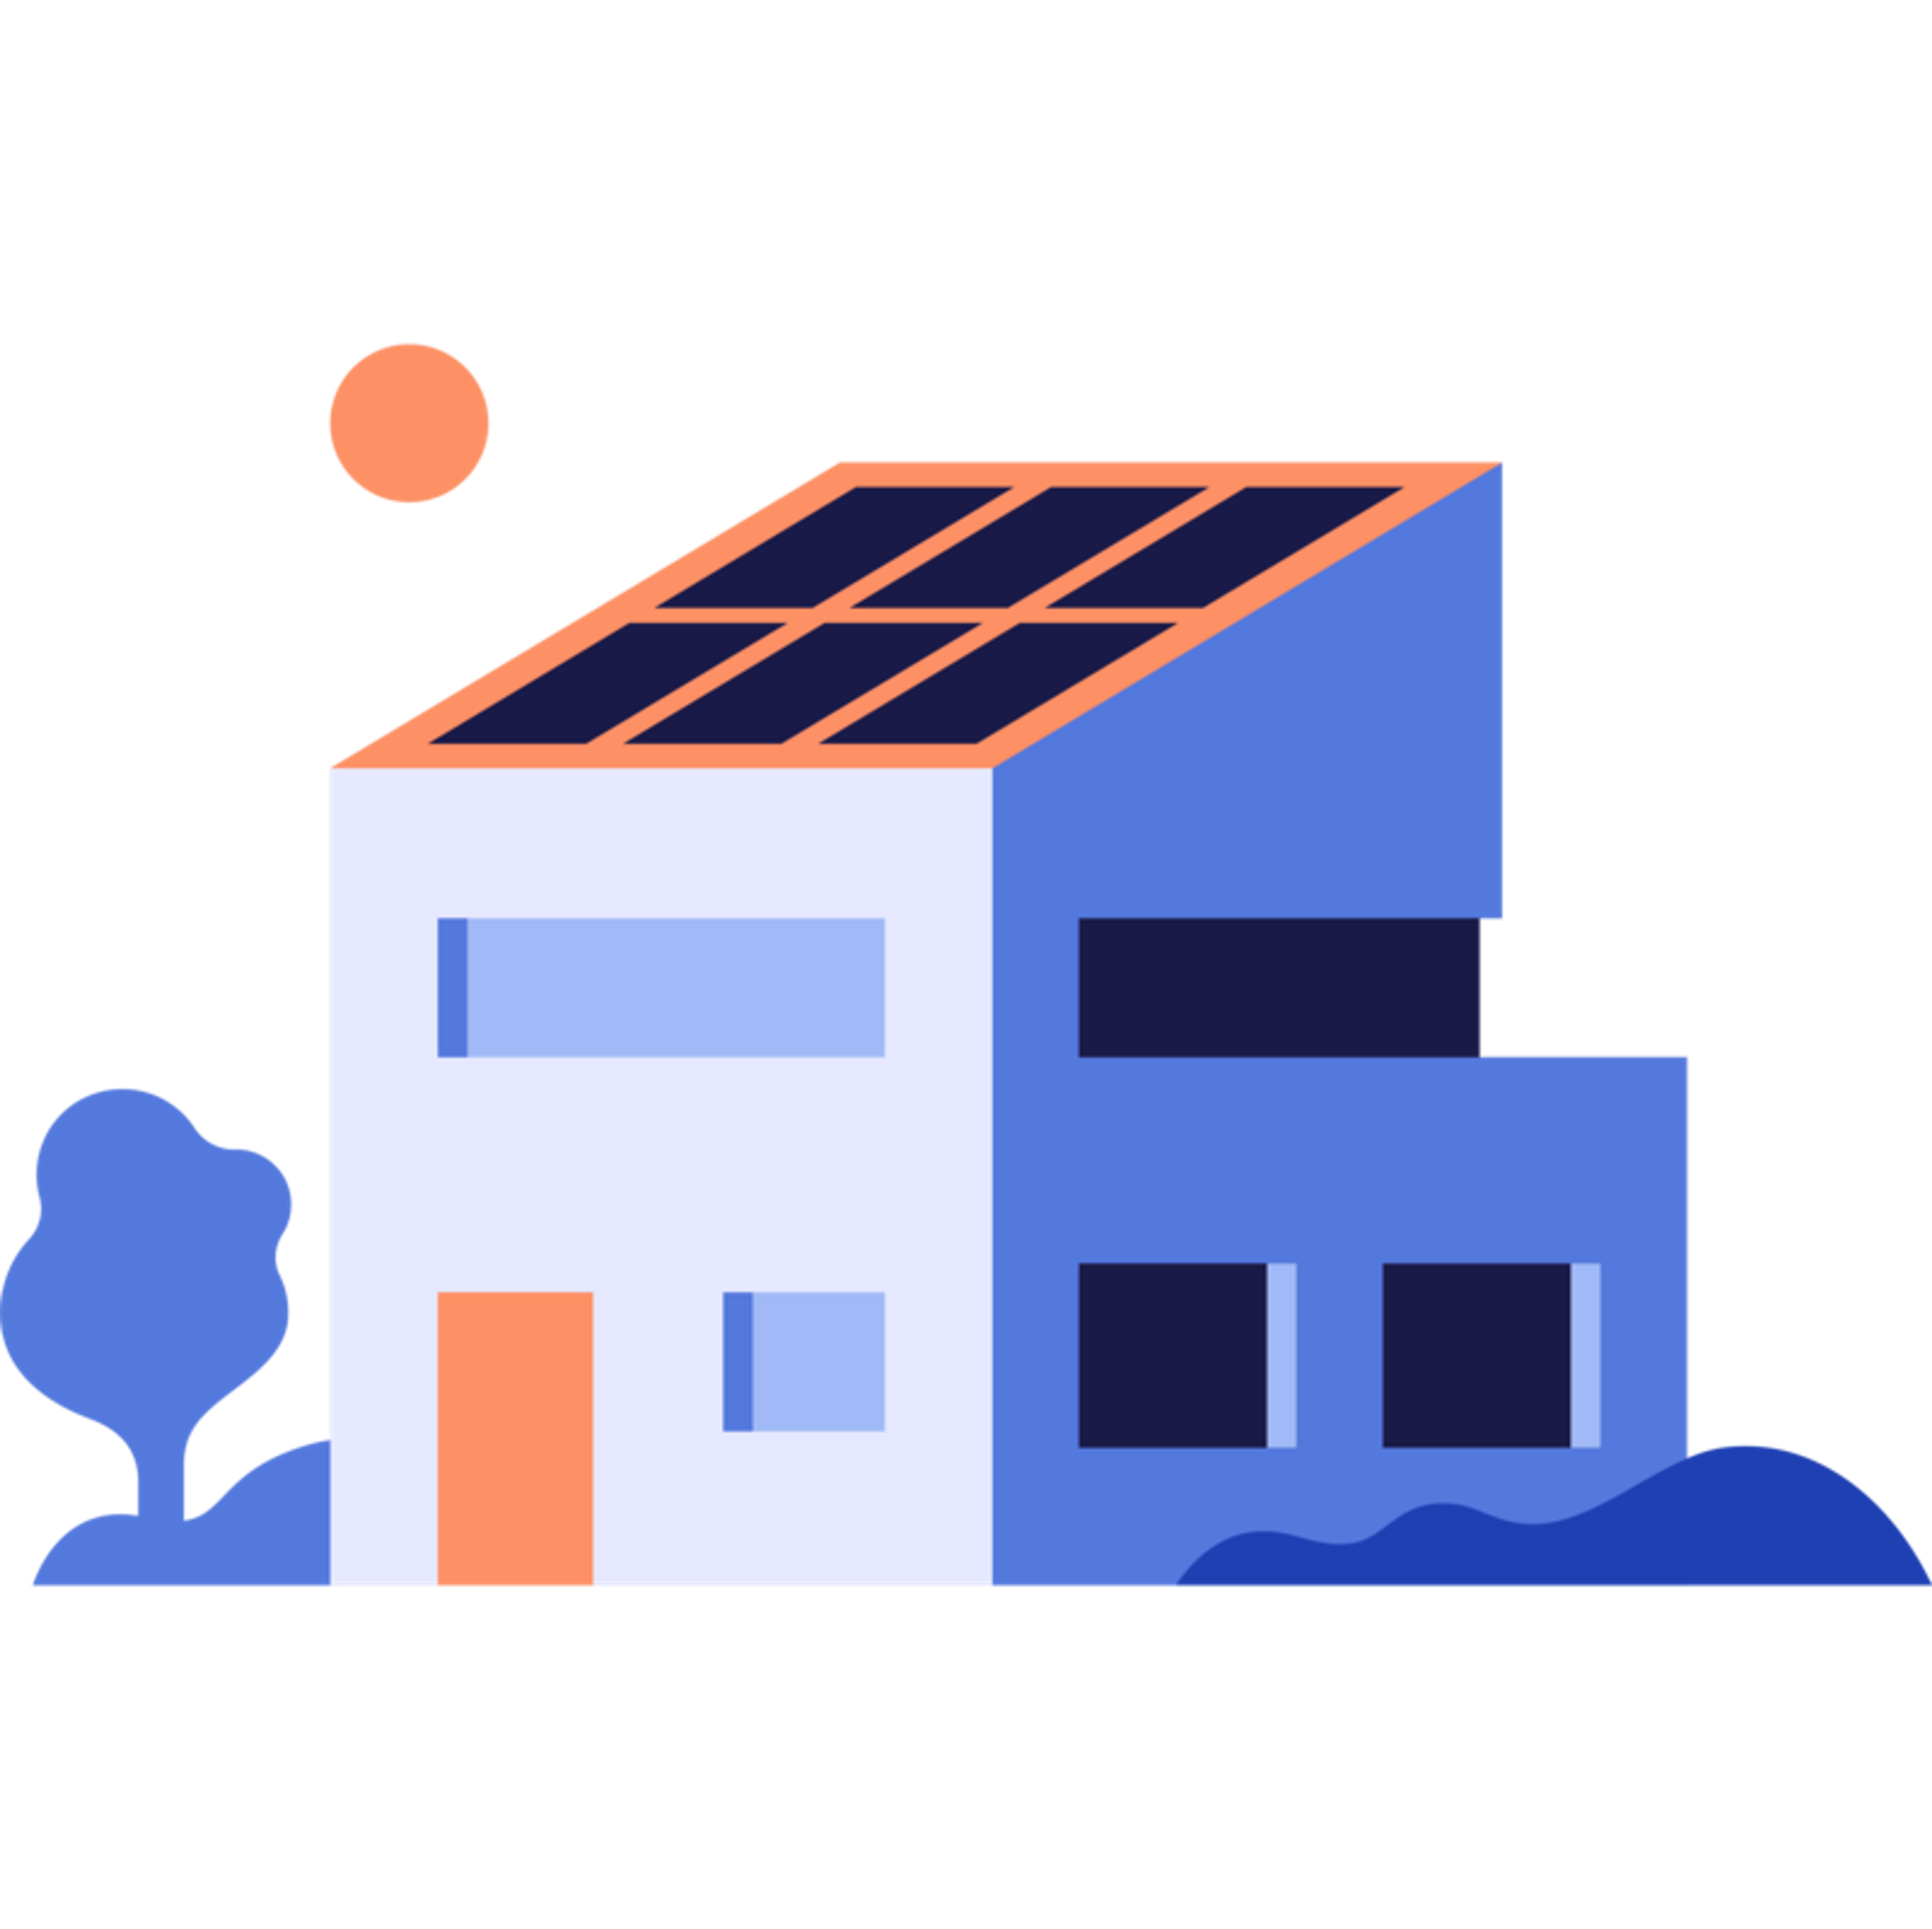 Solpaneler är installerade på ditt hus